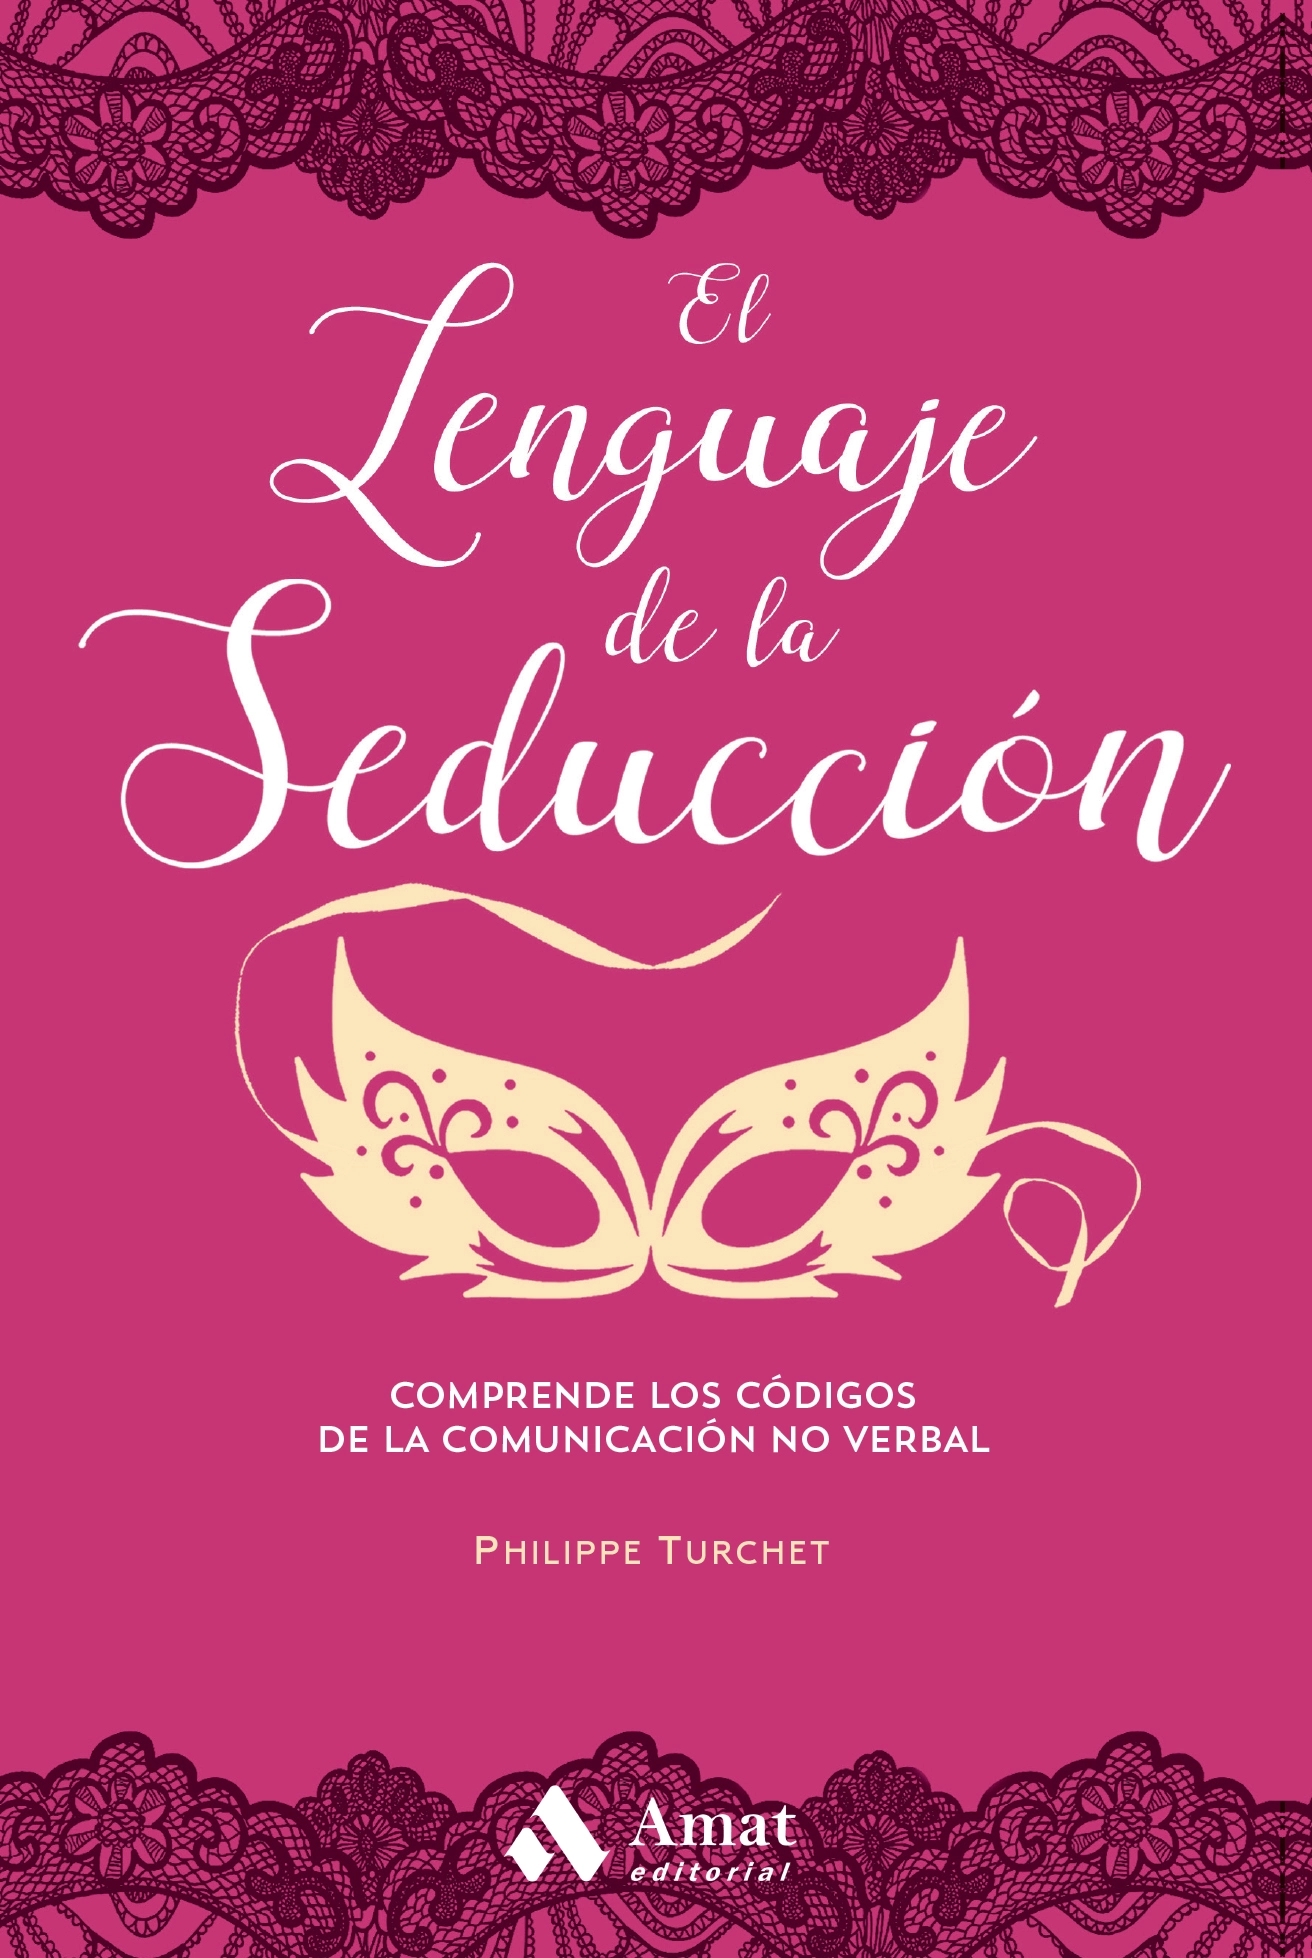 El lenguaje de la seducción | Philippe Turchet | Libros para vivir mejor